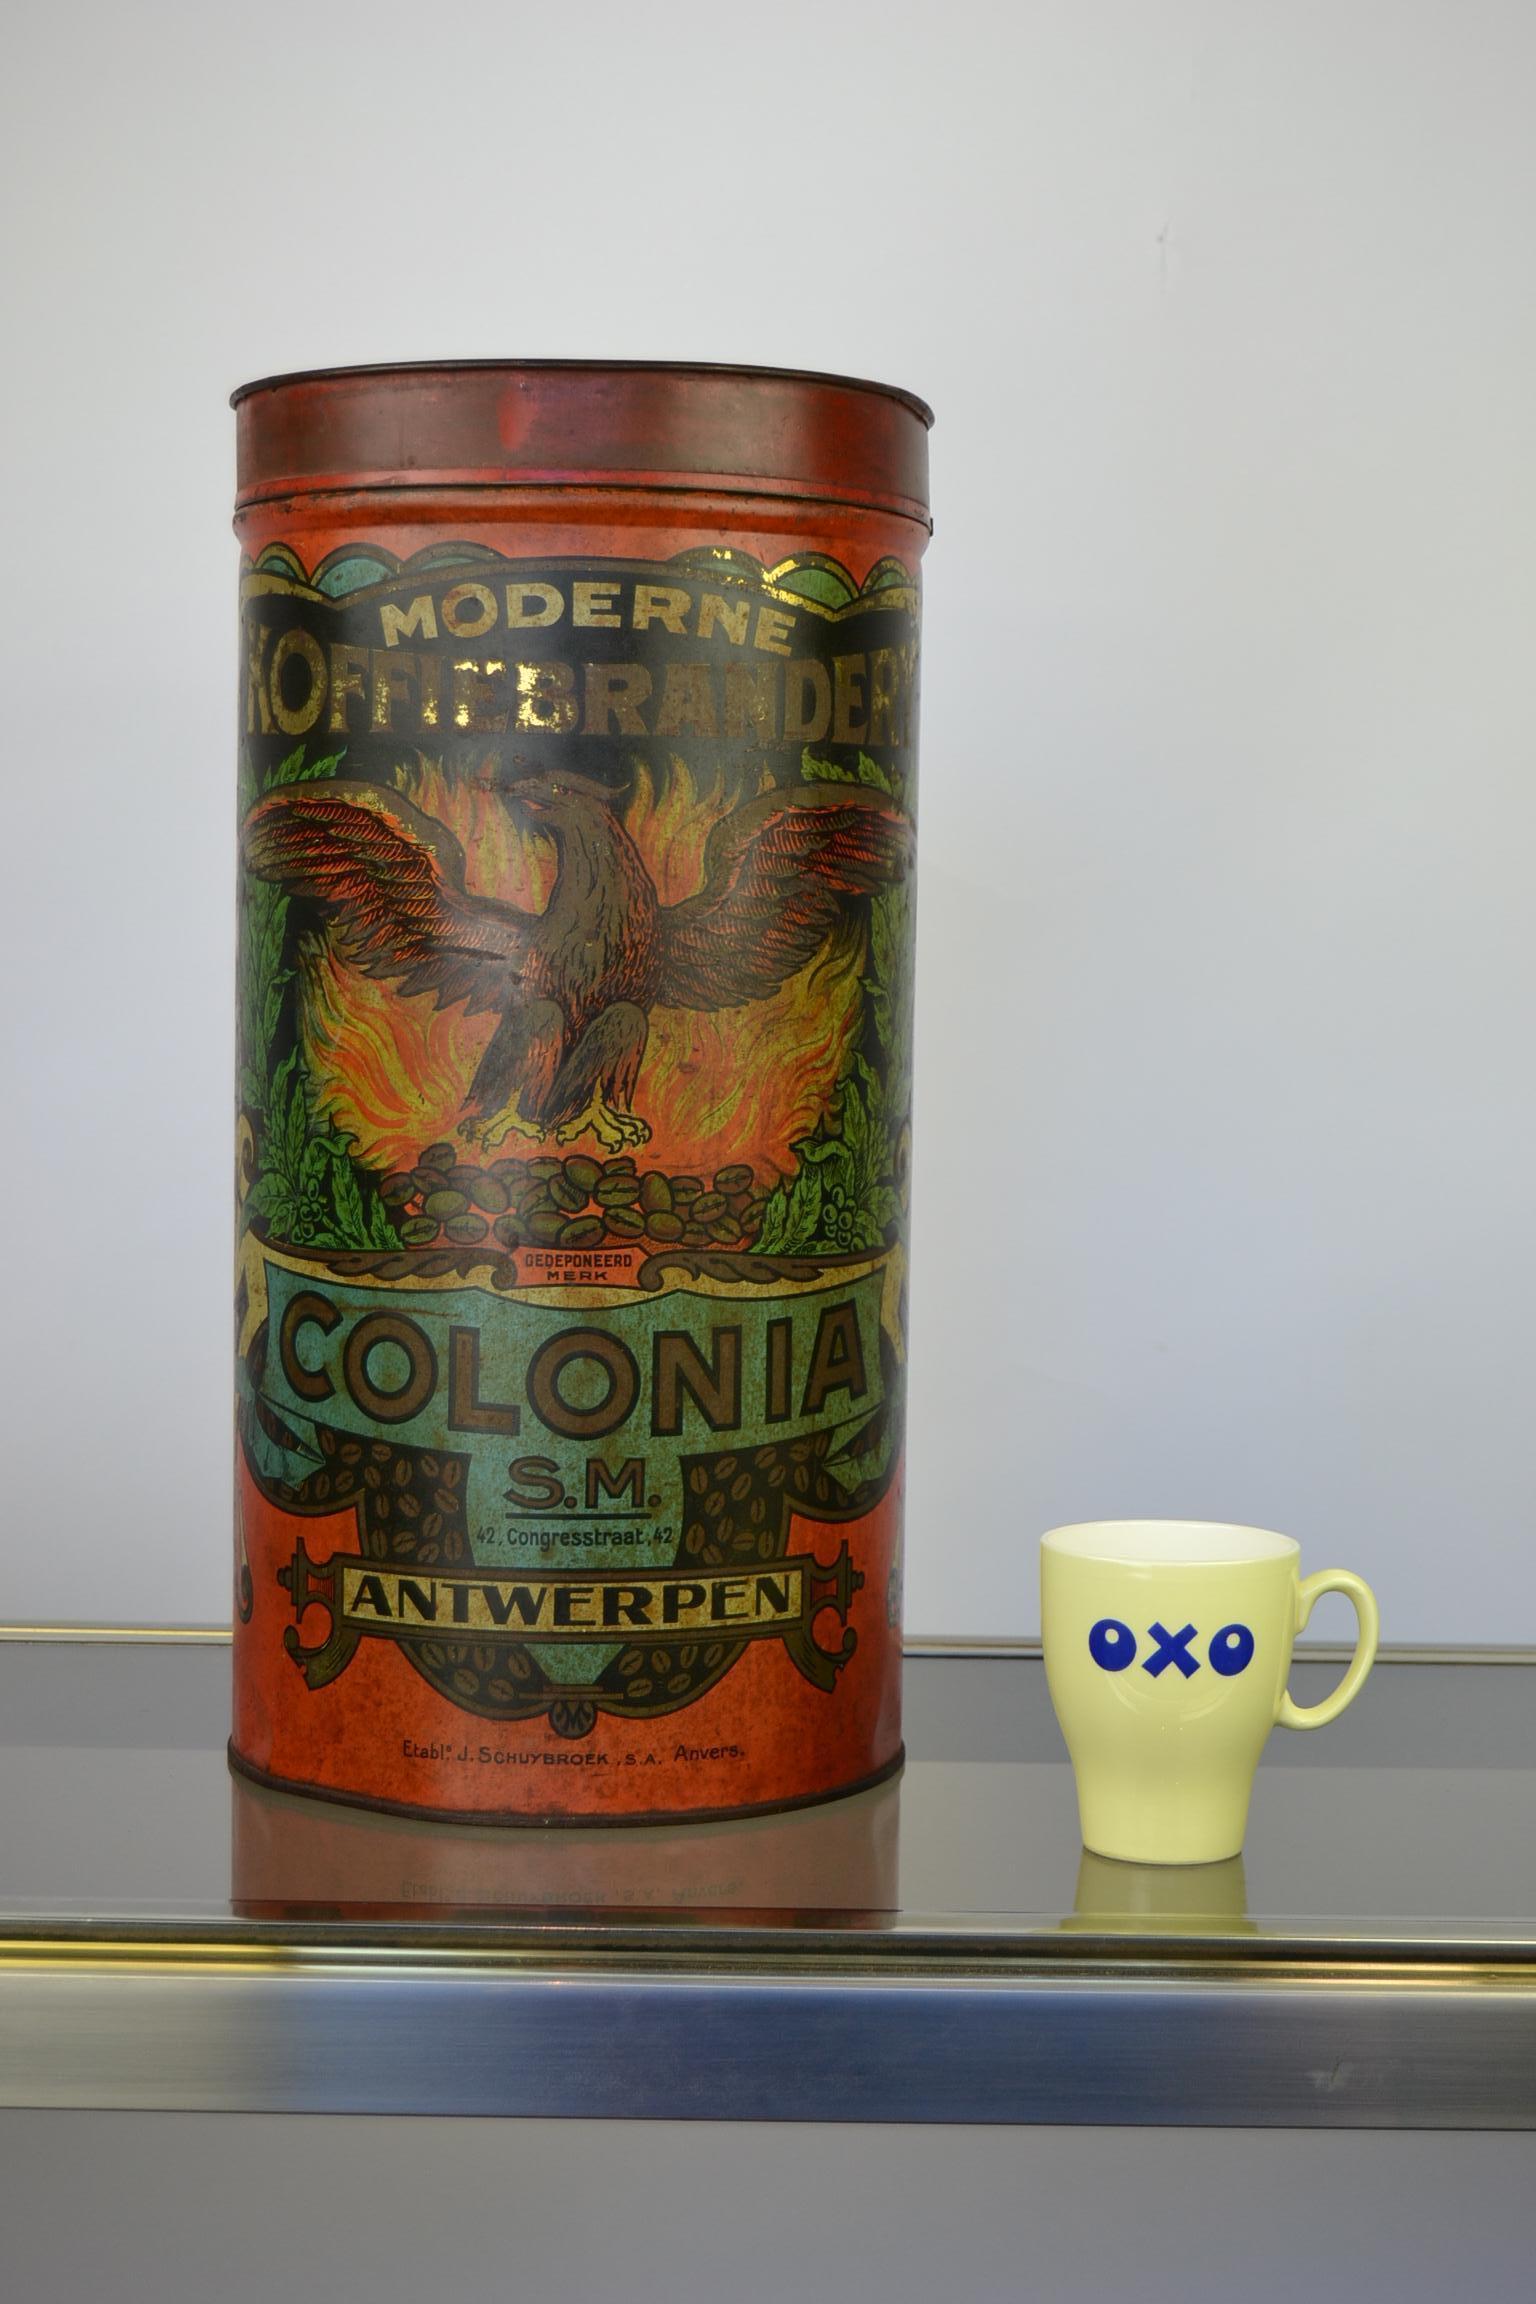 Tolle große Kaffeedose - Kaffeedose aus dem frühen 20. Jahrhundert.
Dieser röhrenförmige rote Kaffeebehälter hat ein tolles lithografisches Design:
Ein Adler mit ausgebreiteten Flügeln auf brennenden Kaffeebohnen.
Diese antike Kaffeedose wurde